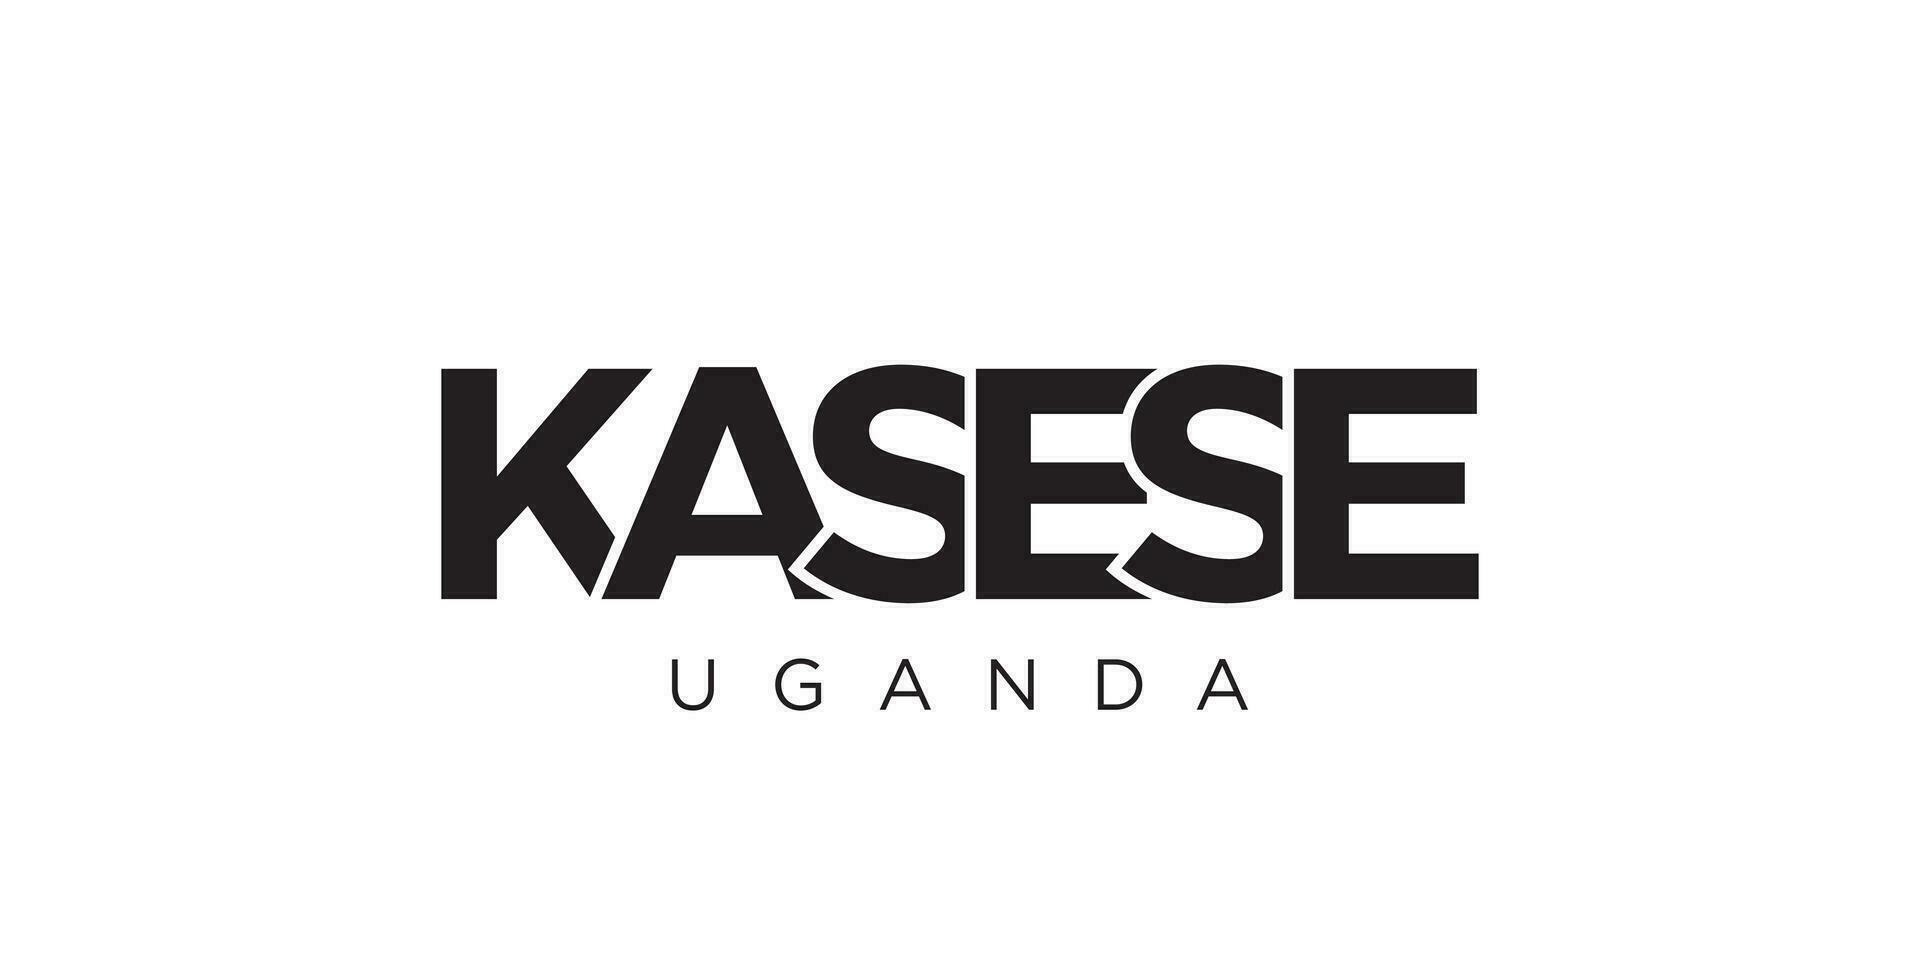 kasese dentro a Uganda emblema. a Projeto características uma geométrico estilo, vetor ilustração com negrito tipografia dentro uma moderno Fonte. a gráfico slogan rotulação.